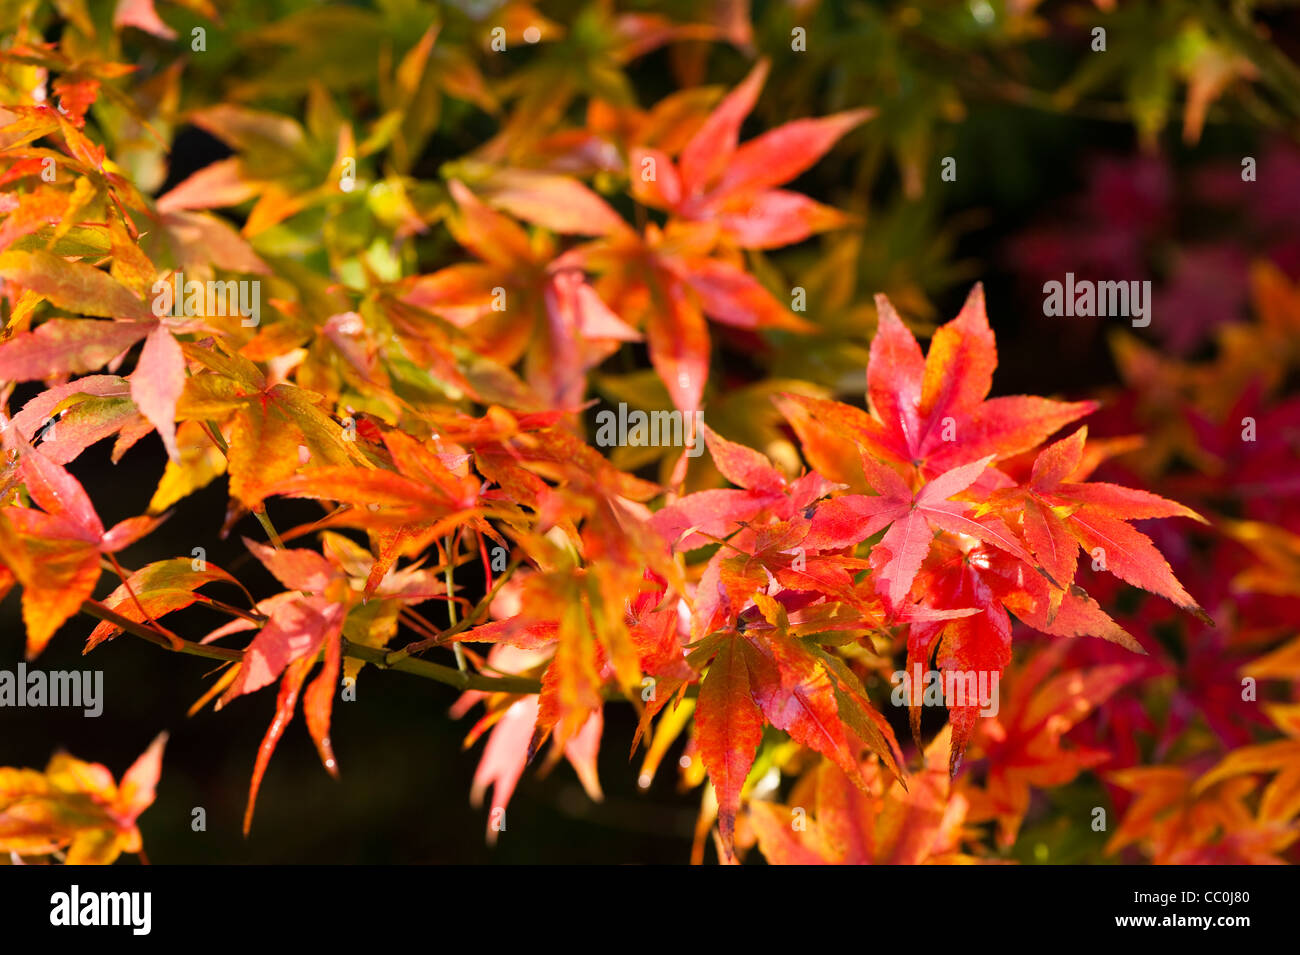 Acer pubipalmatum, Maple, in autumn Stock Photo